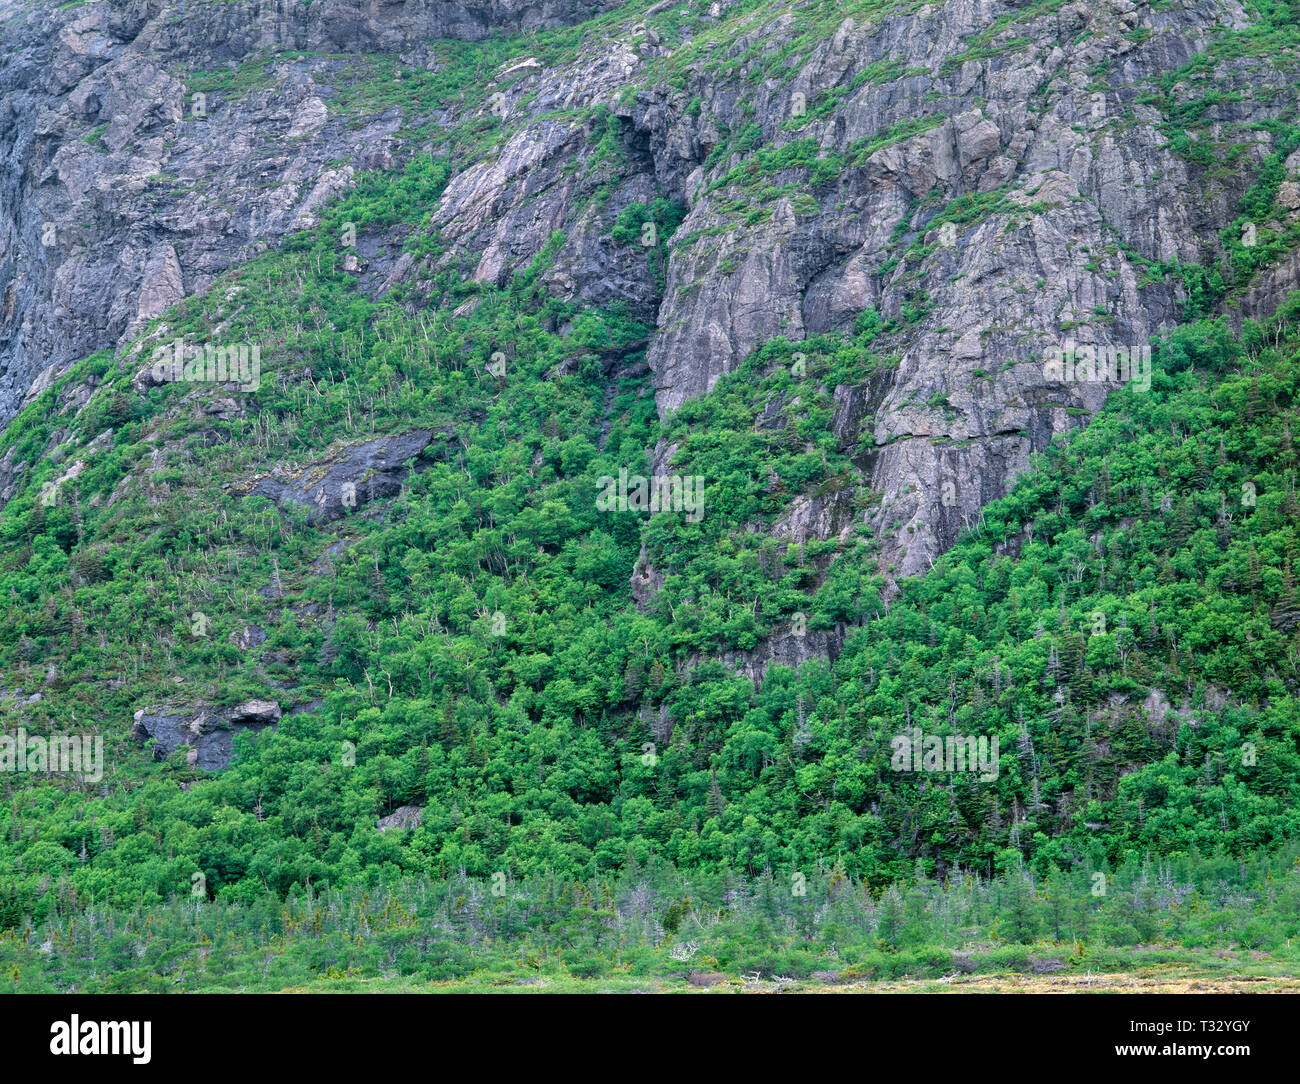 Kanada, Neufundland, Gros Morne National Park, gemischte Nadel- und Laubholz Bäume wachsen auf steilen, felsigen Hang in der Nähe des Tablelands. Stockfoto